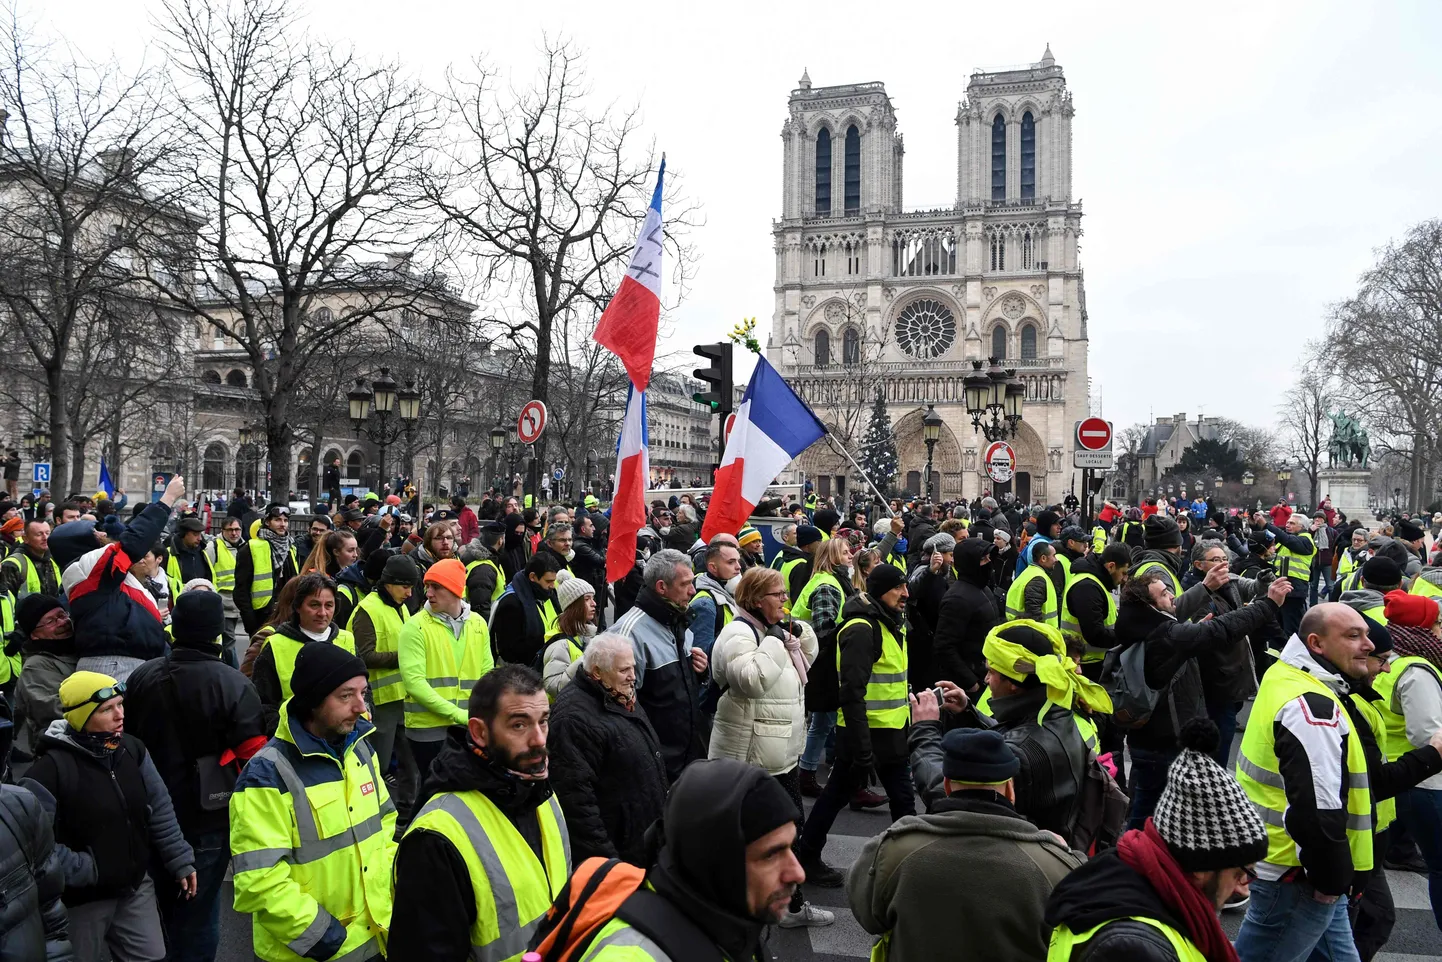 Prantsuse kollavestide protestiliikumise liikmed  5. jaanuaril Pariisis Jumalaema kiriku ees meelt avaldamas.